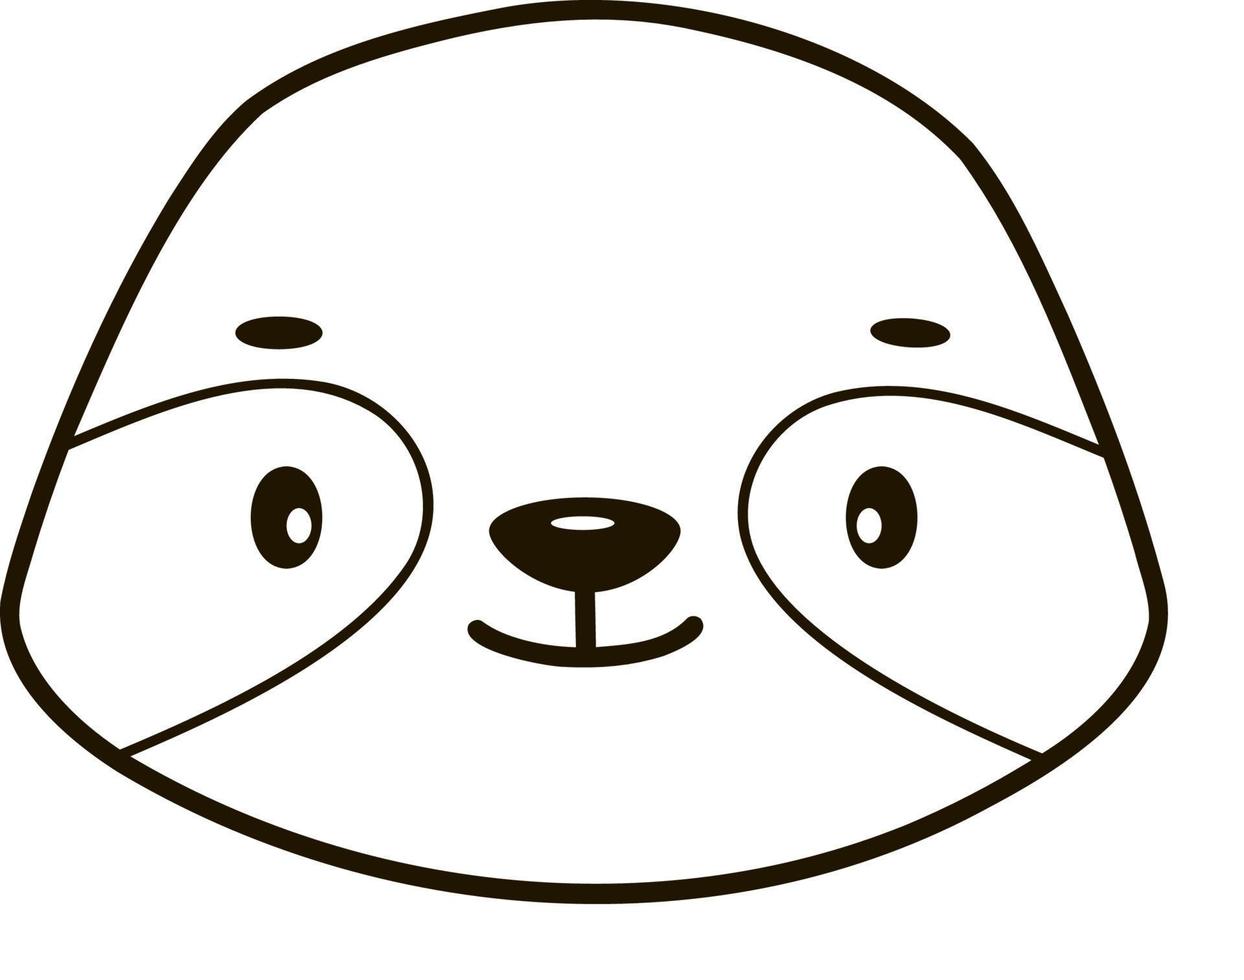 Página para colorir de panda para ilustração de esboço de vetor de crianças